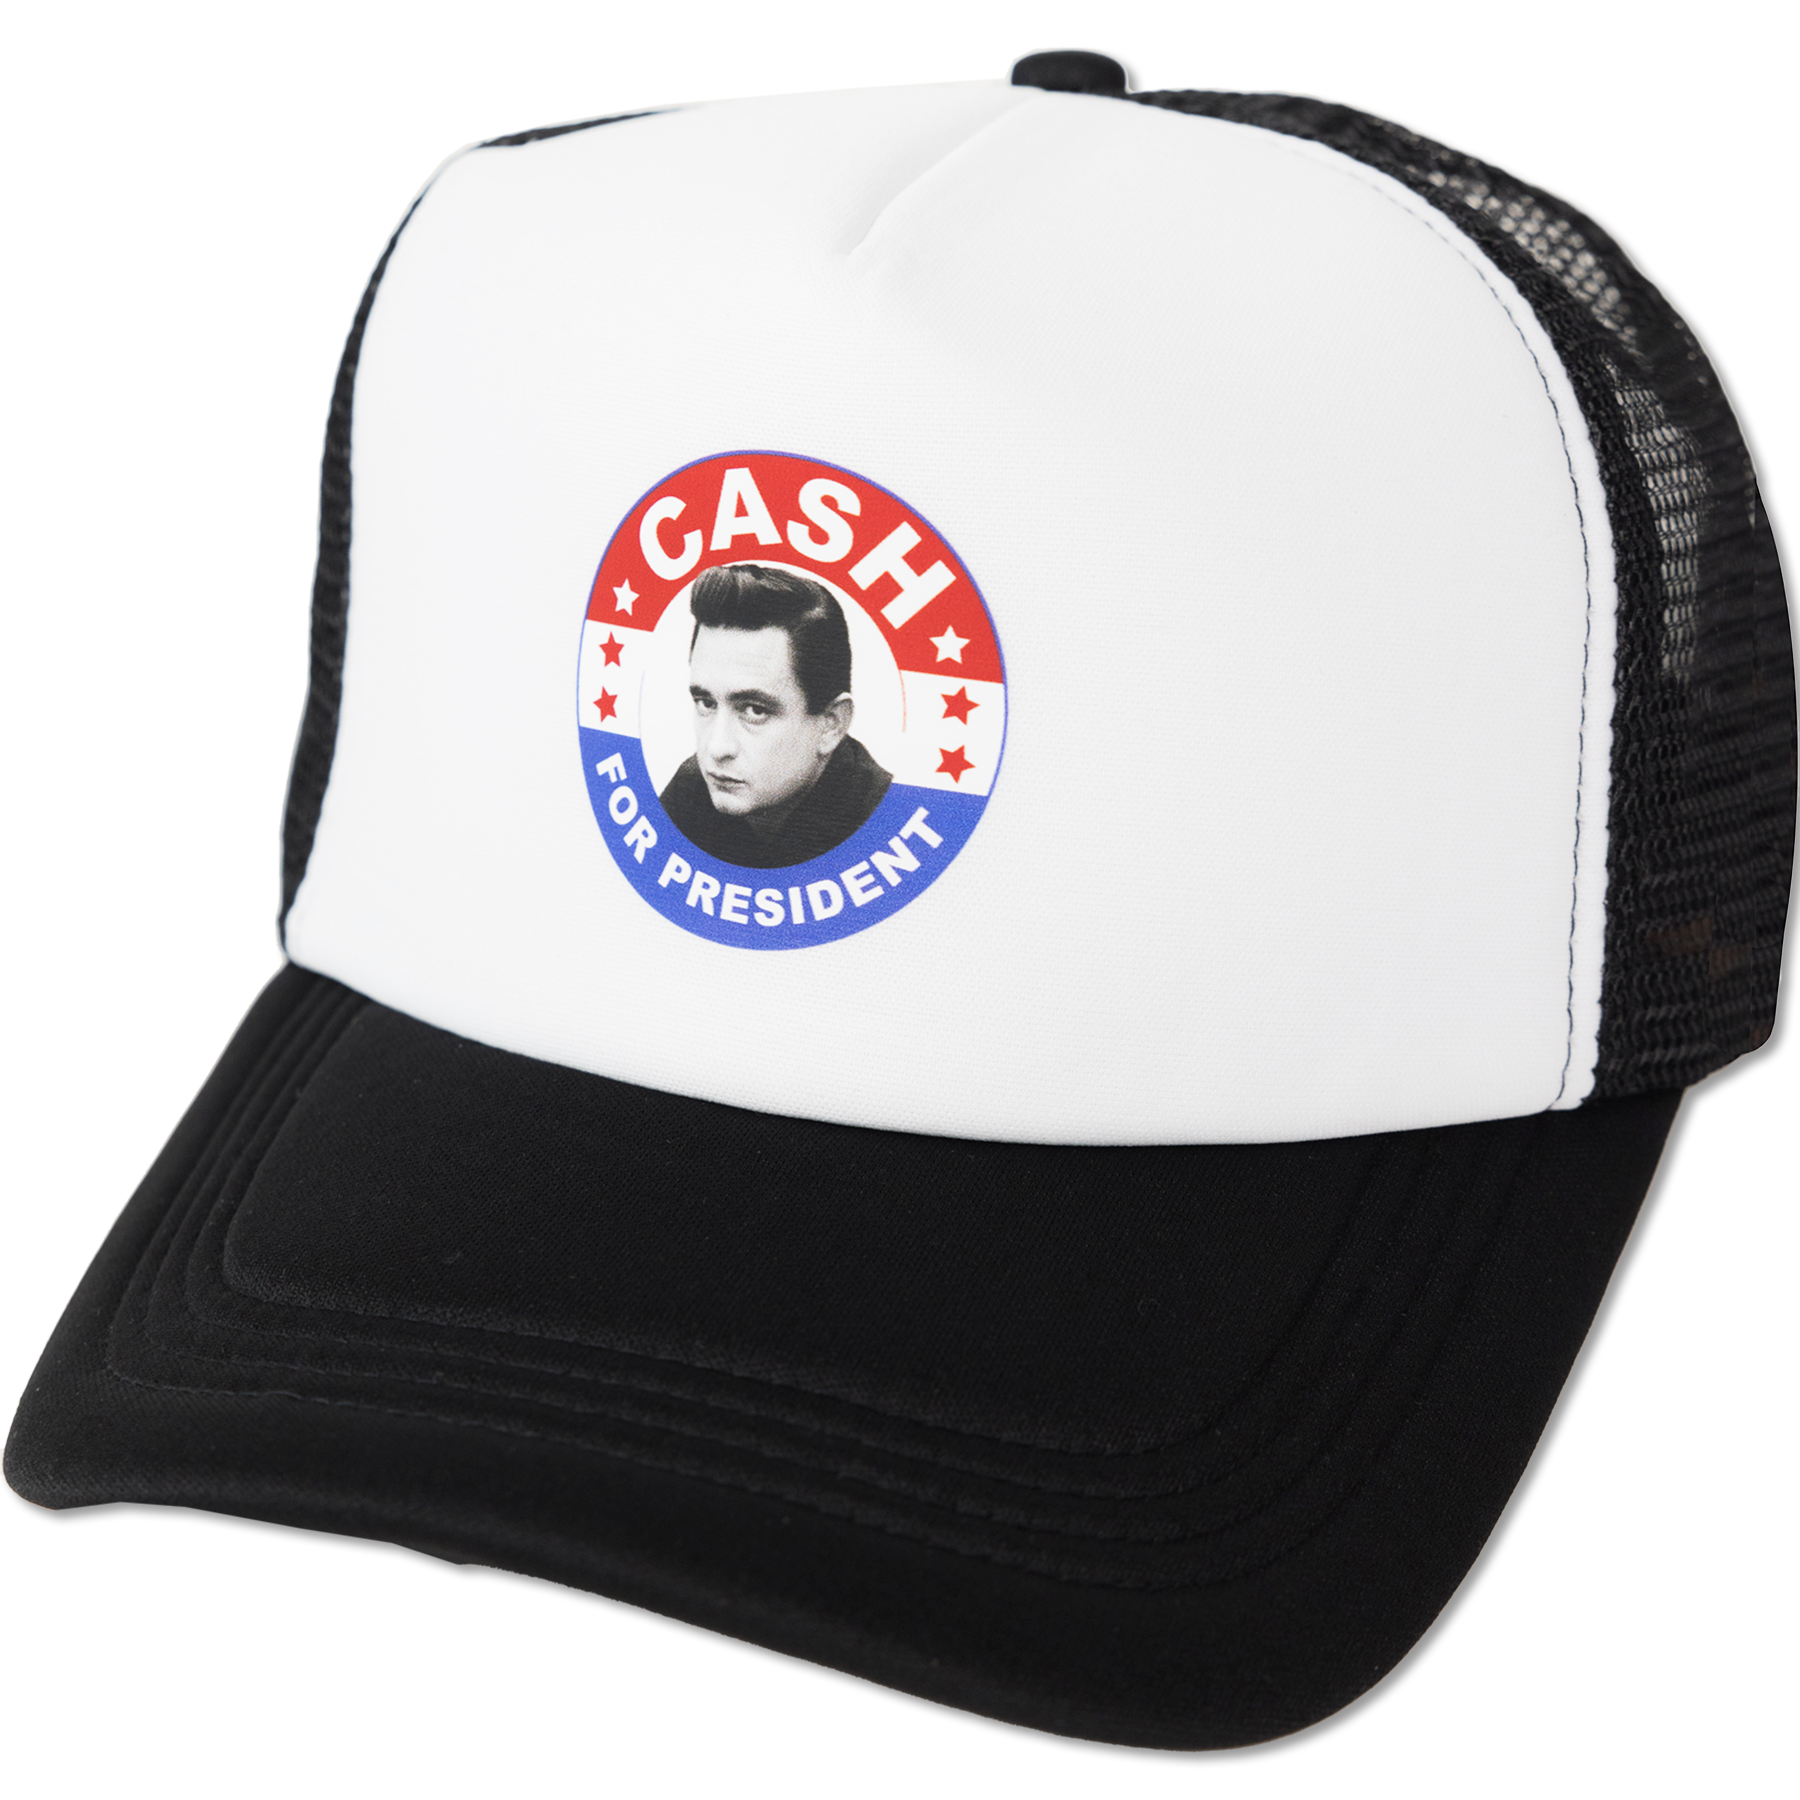 Johnny Cash for President Trucker Hat